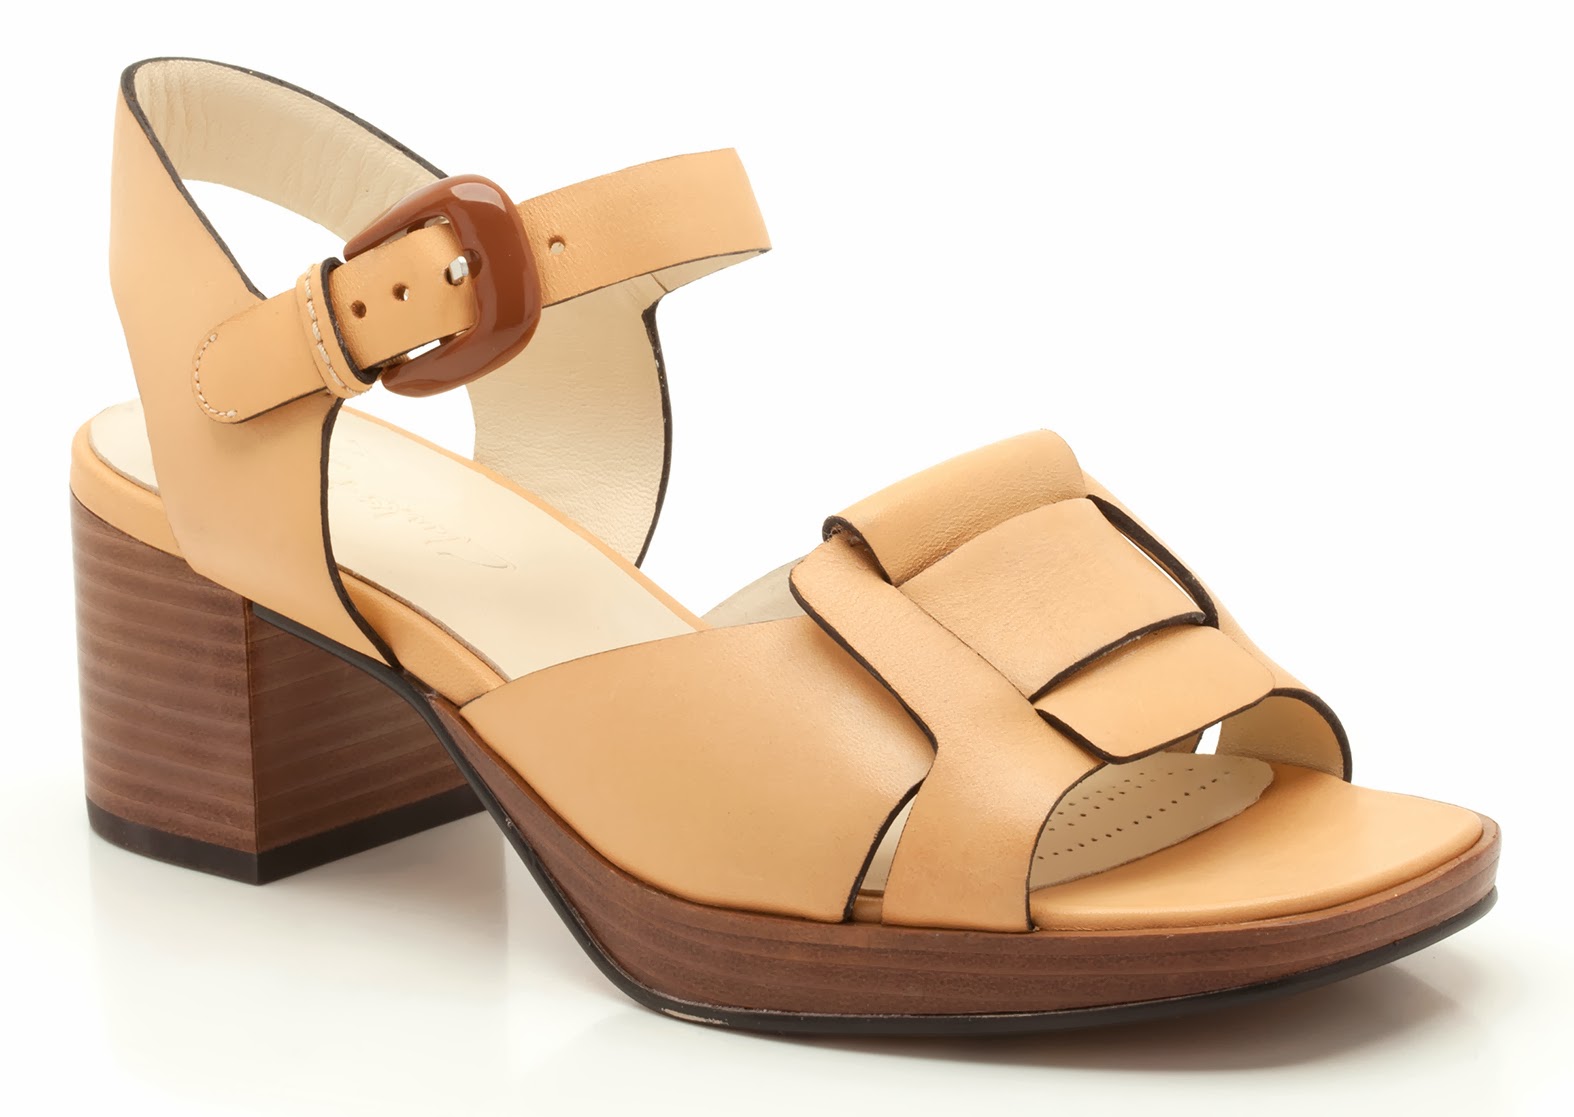 I Love Orla Kiely: Orla Kiely for Clarks Shoes